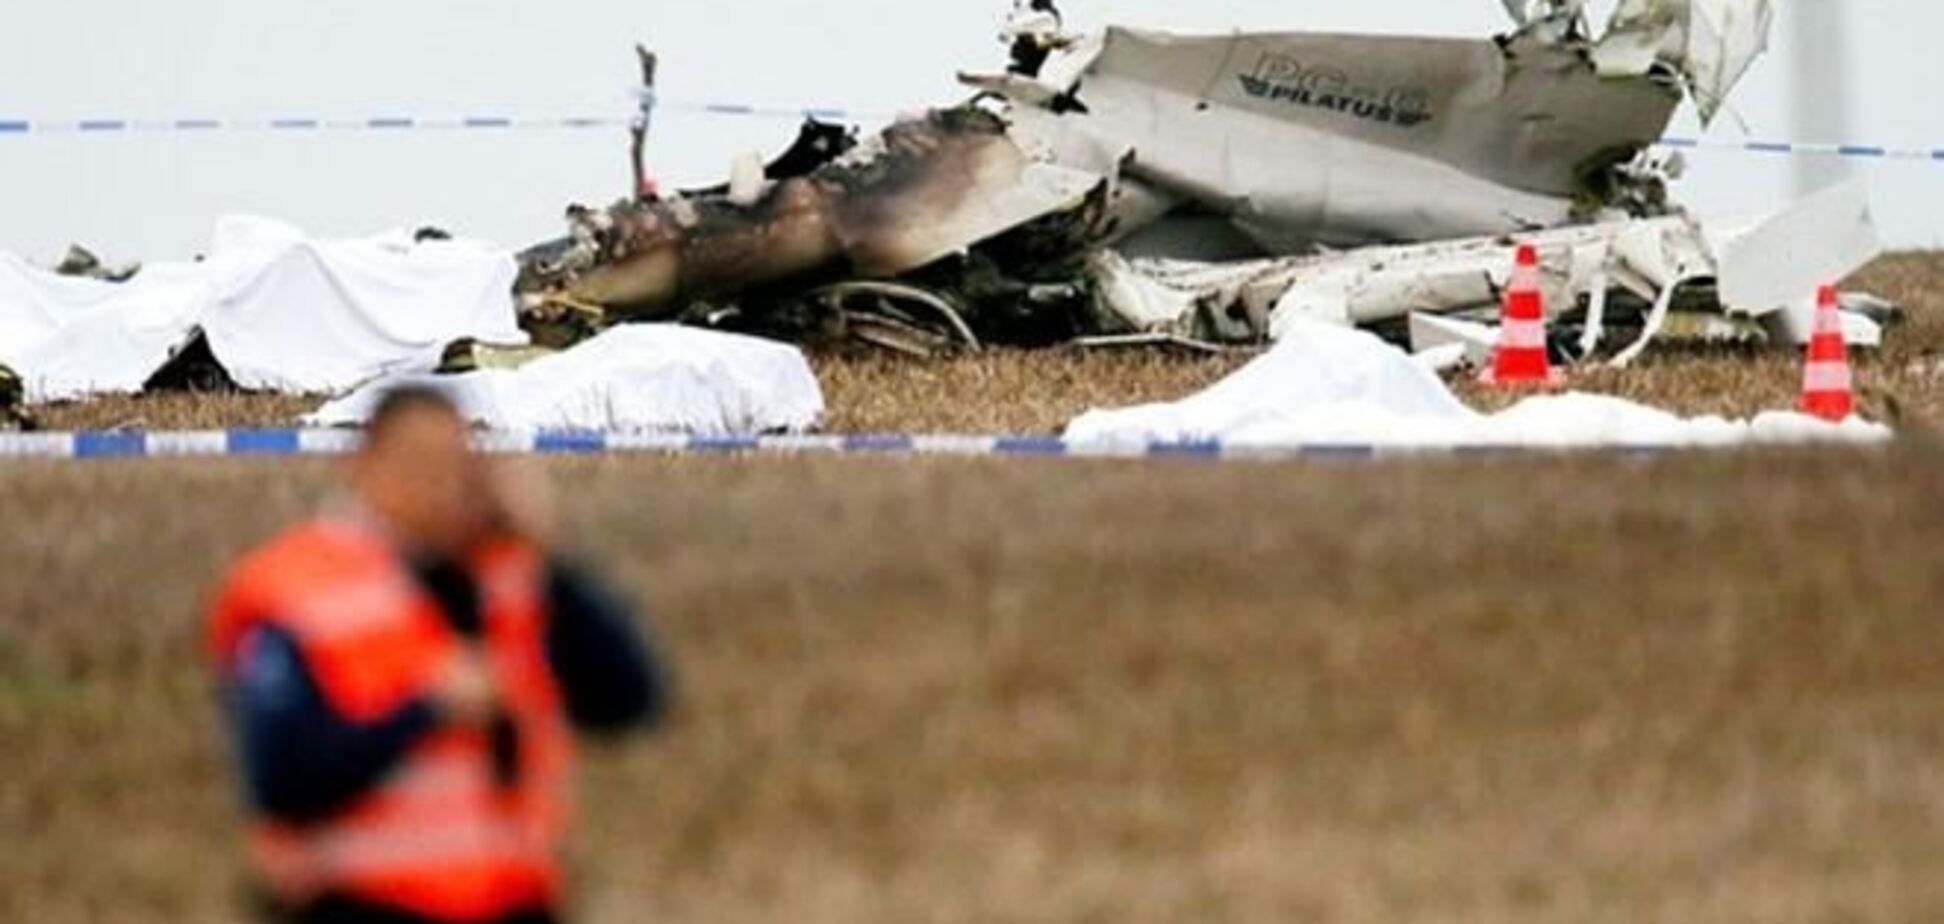 Подробности авиакатастрофы в Бельгии: самолет уже падал 13 лет назад